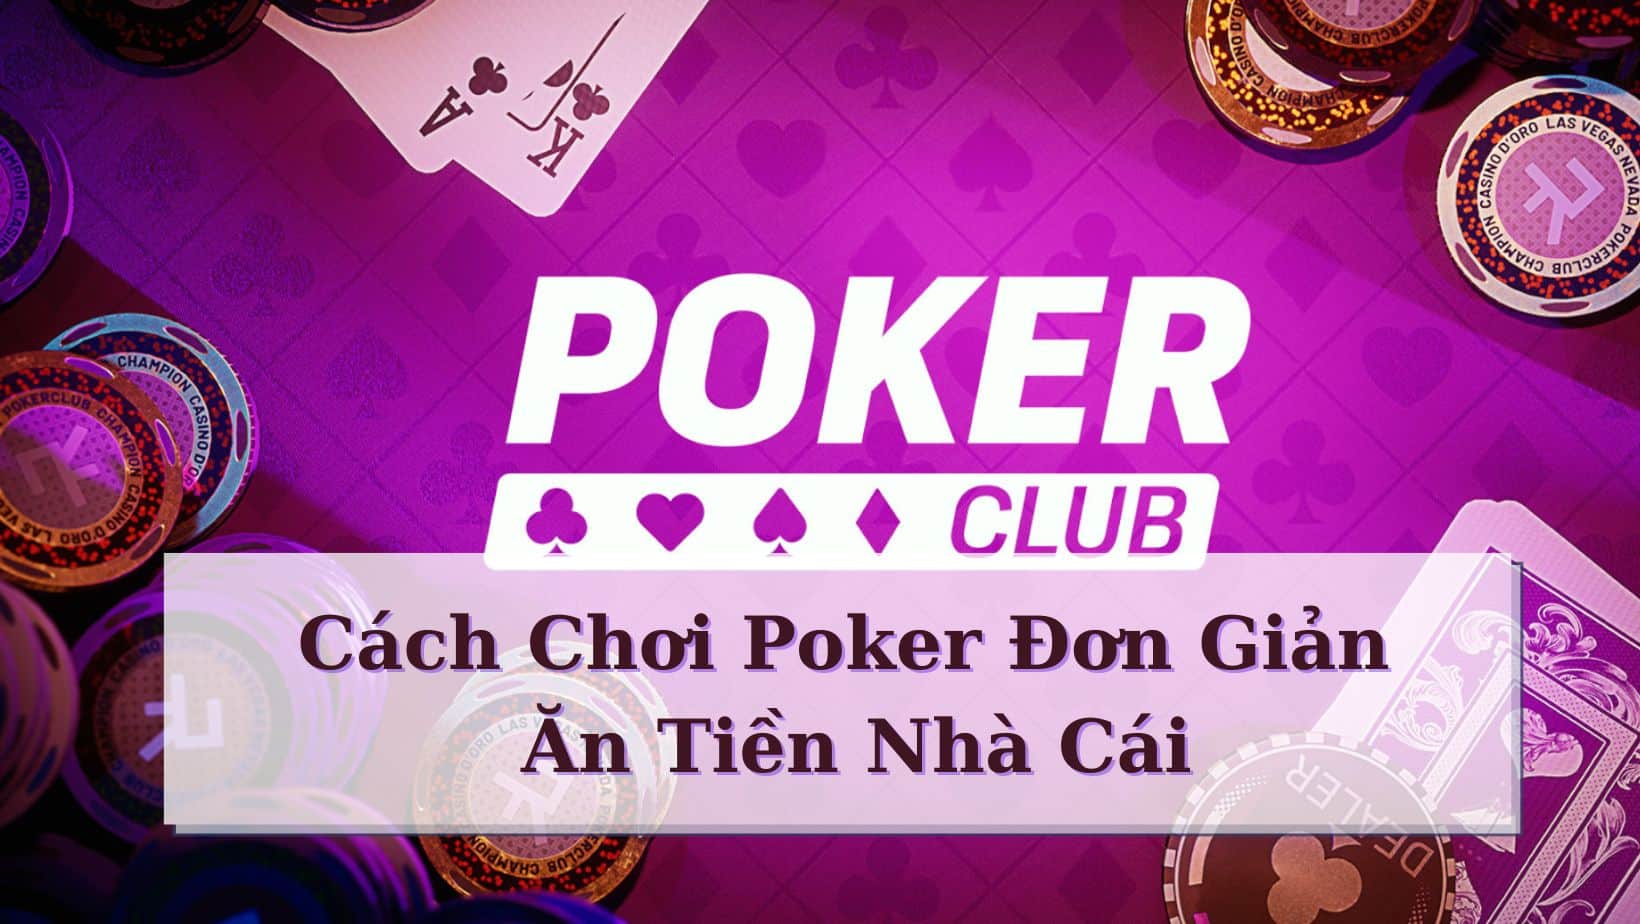 Tìm hiểu thông tin chung về game bài thú vị Poker